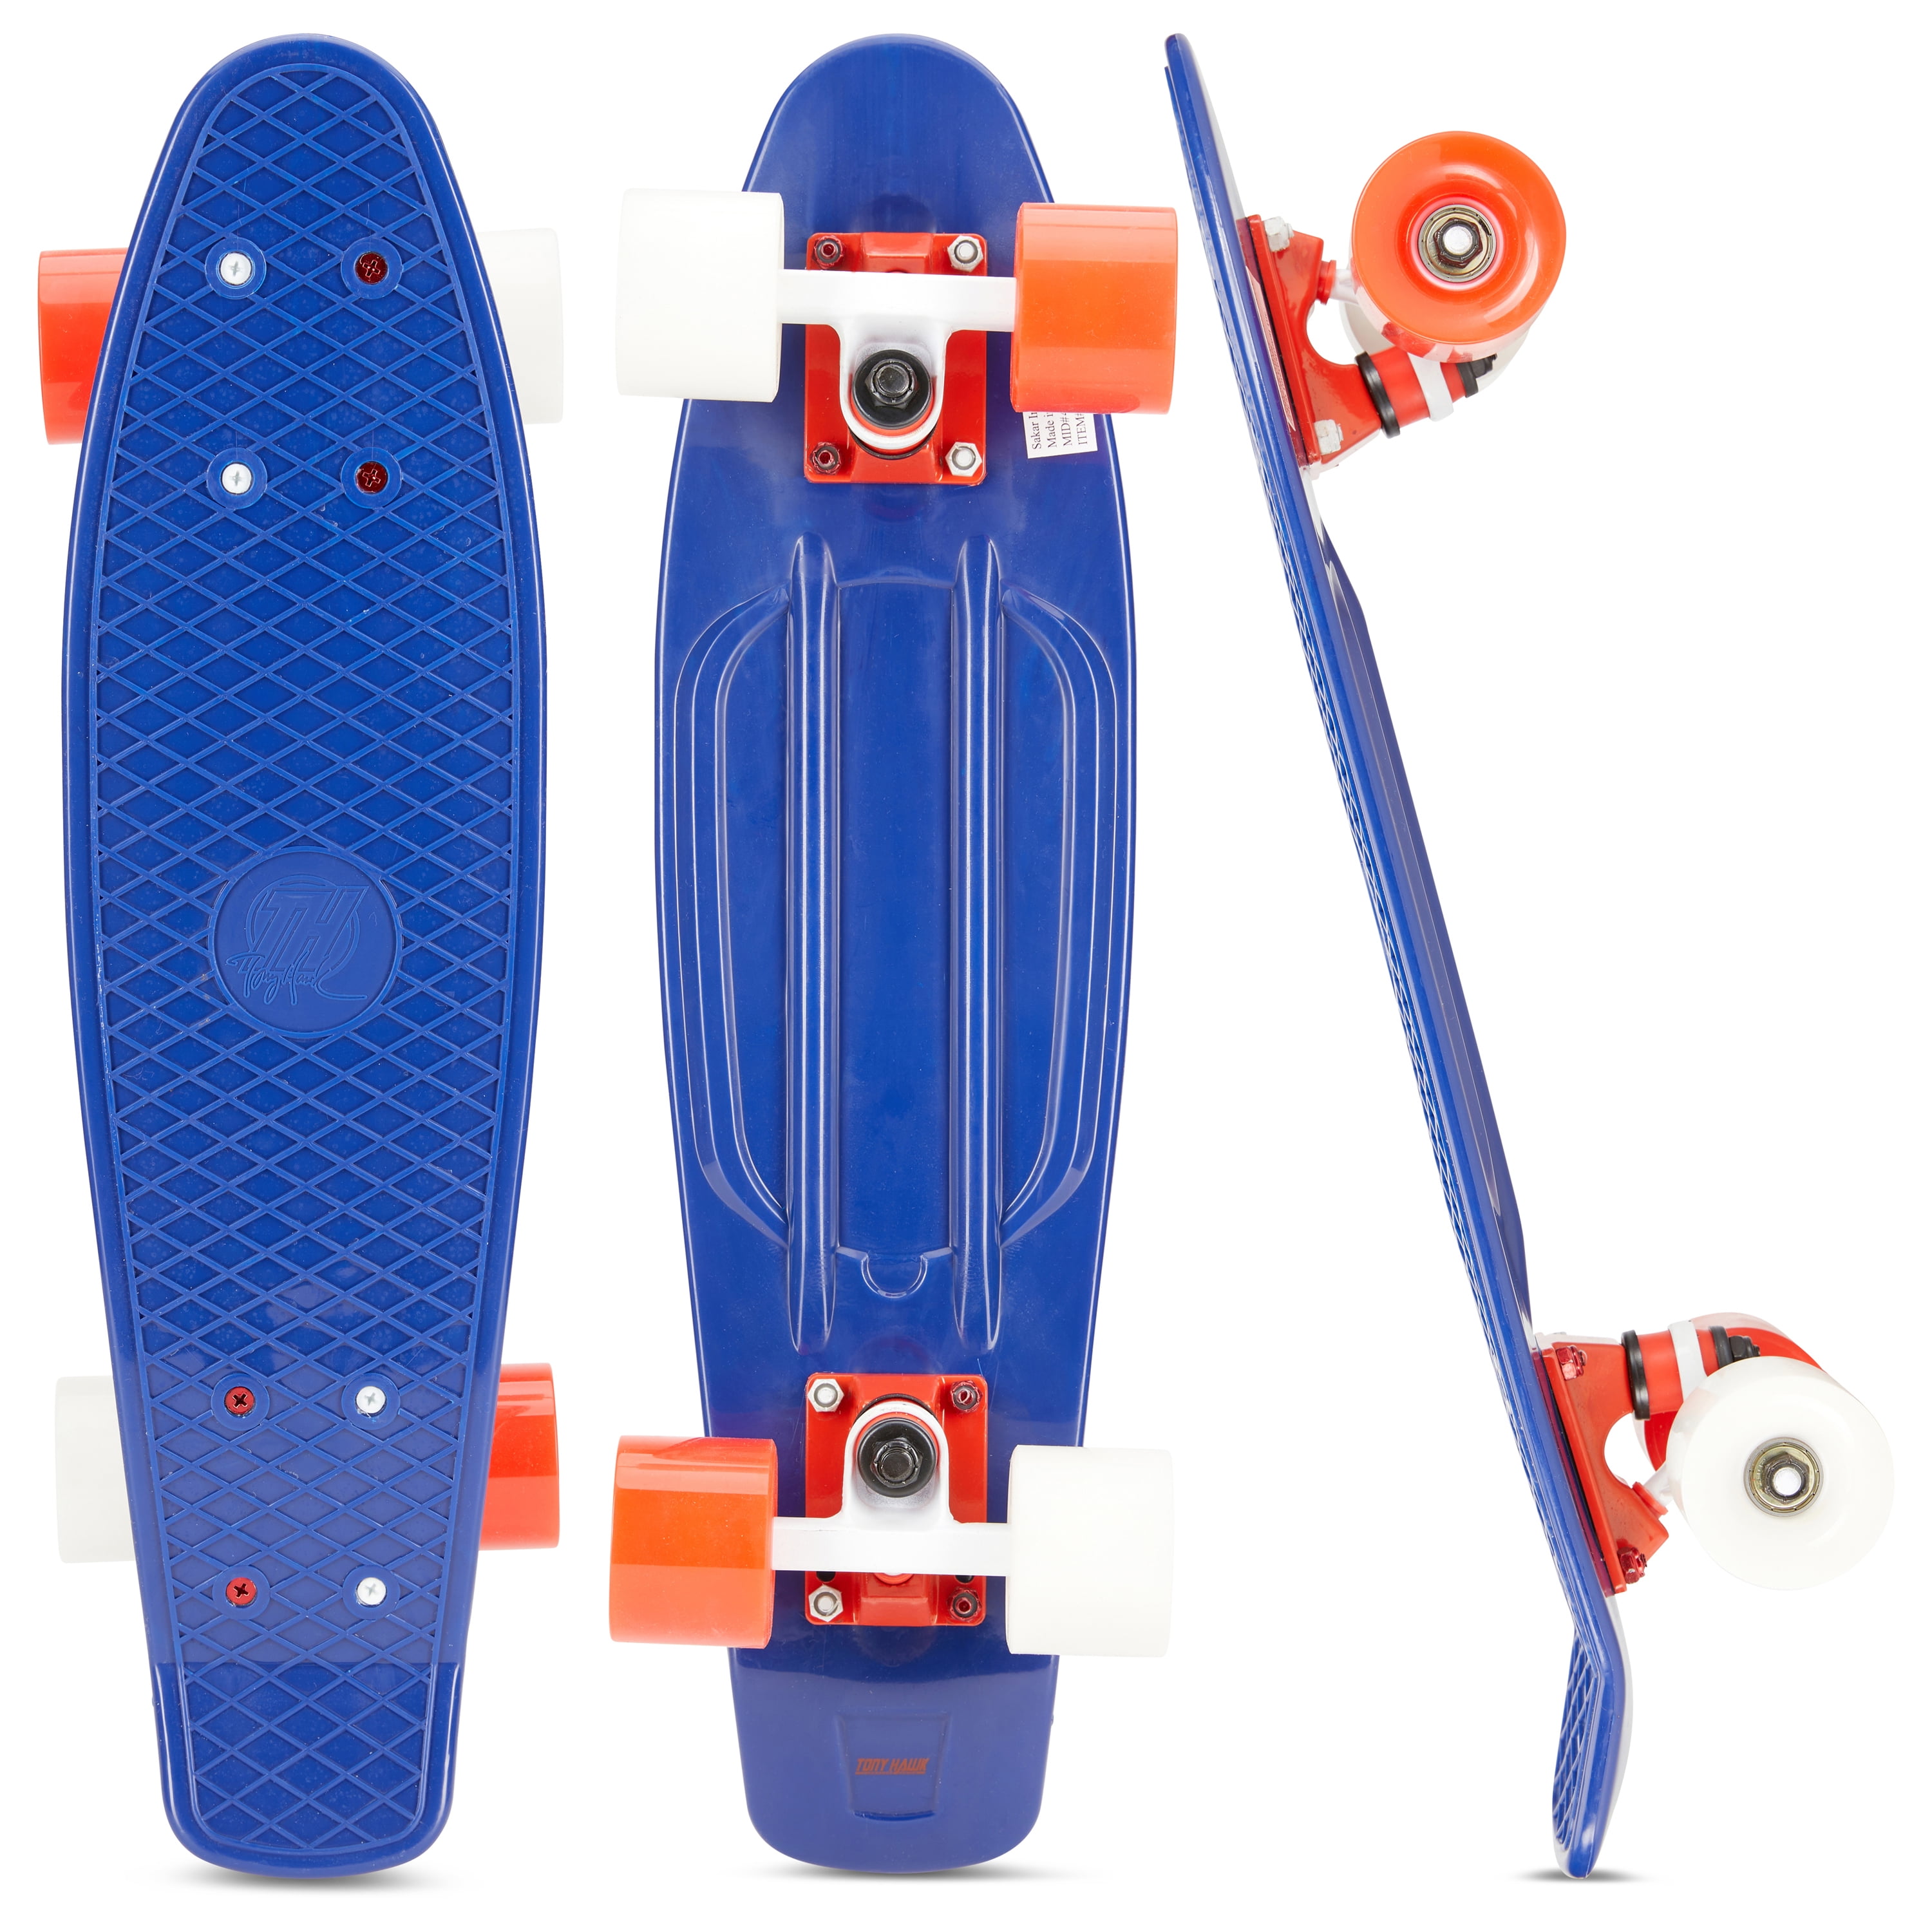 Tony Hawk 22" Mini Skateboard, Penny Style Skateboard for Kids Beginners, Blue - Walmart.com